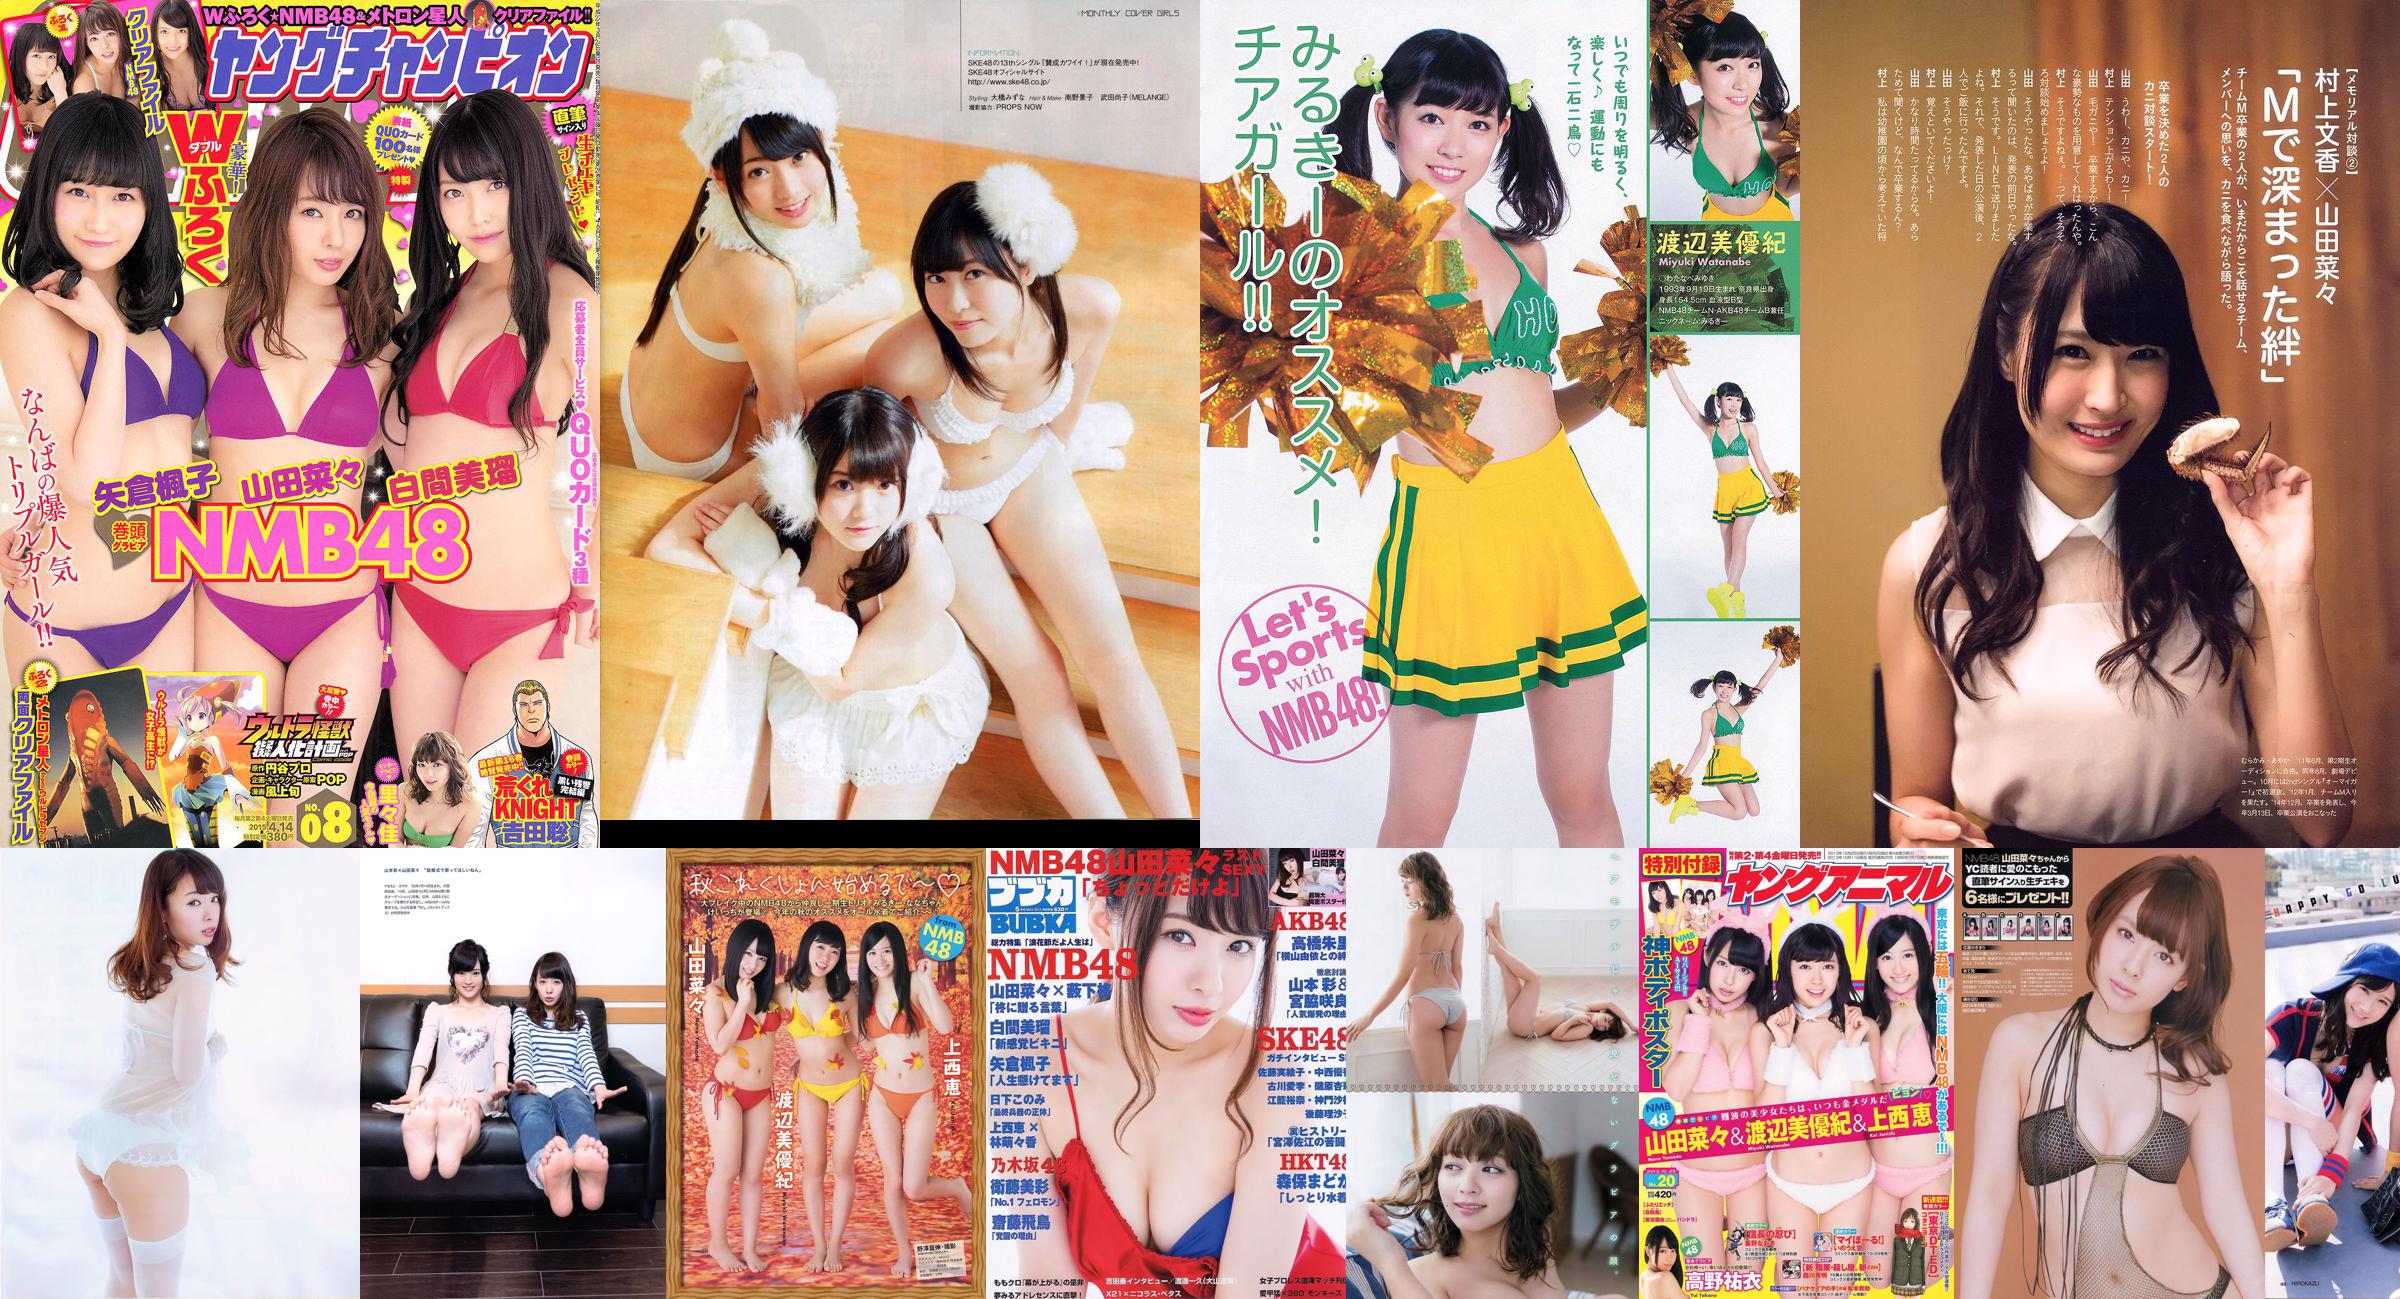 [BUBKA] Nana Yamada Miru Shiroma SKE48 Madoka Moriyasu Misa Eto 2015.05 Fotografia No.c1299c Pagina 1